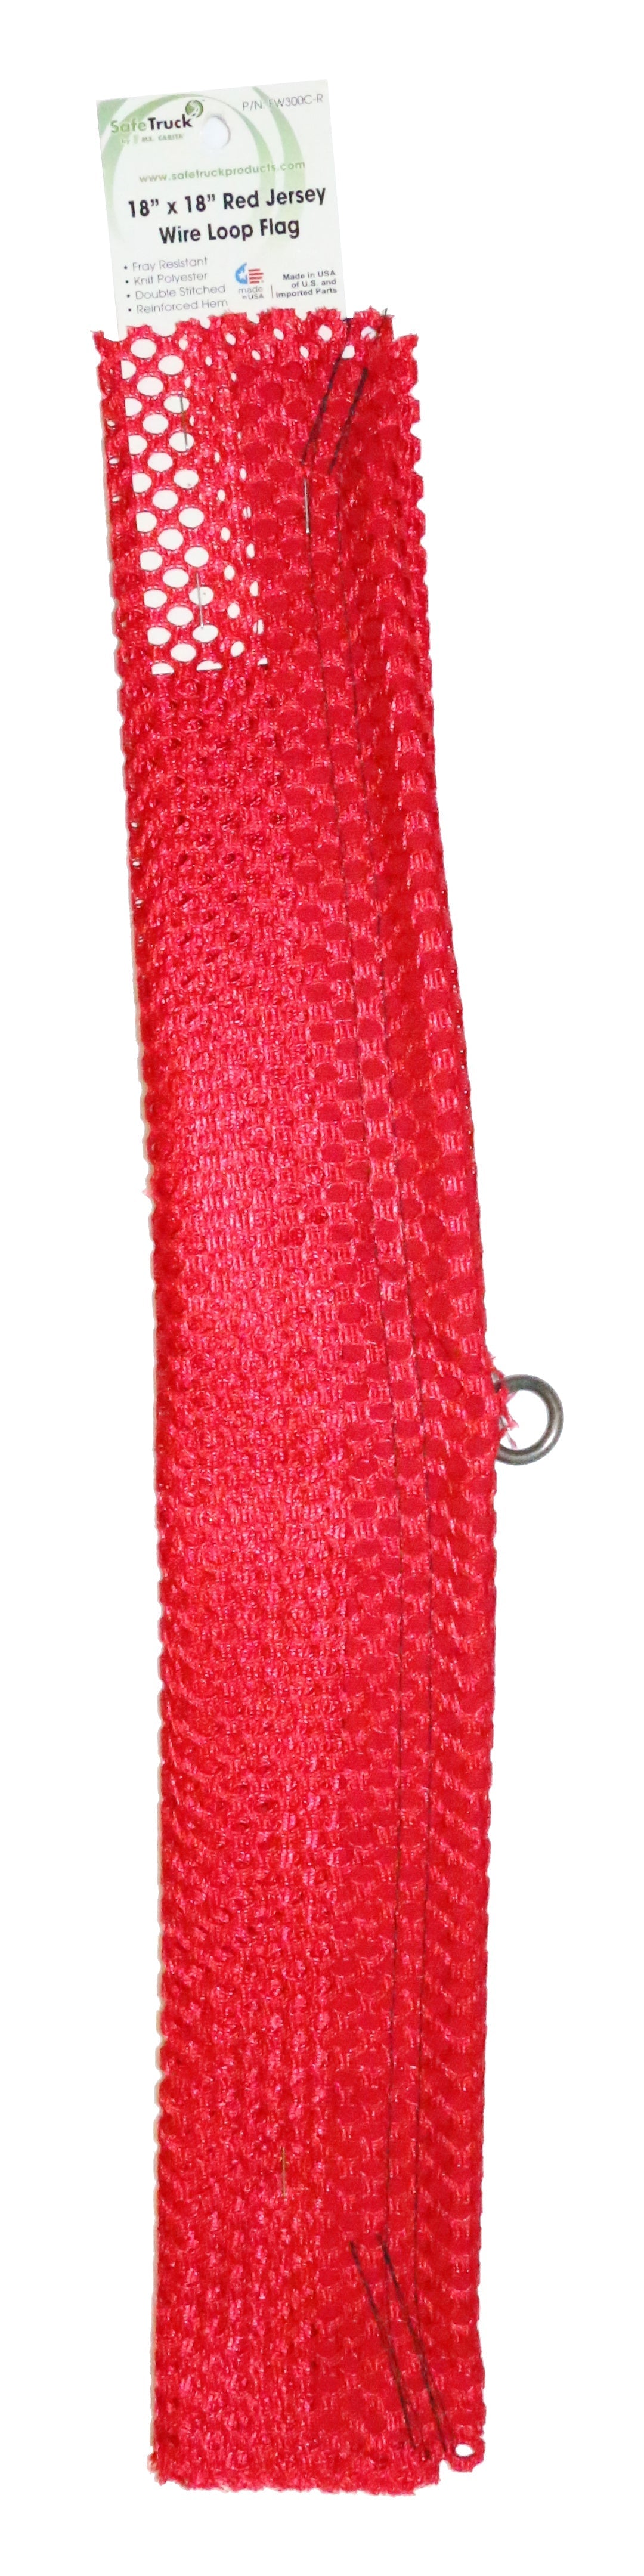 18" Red Jersey w/Wire Loop (Retail PKG)